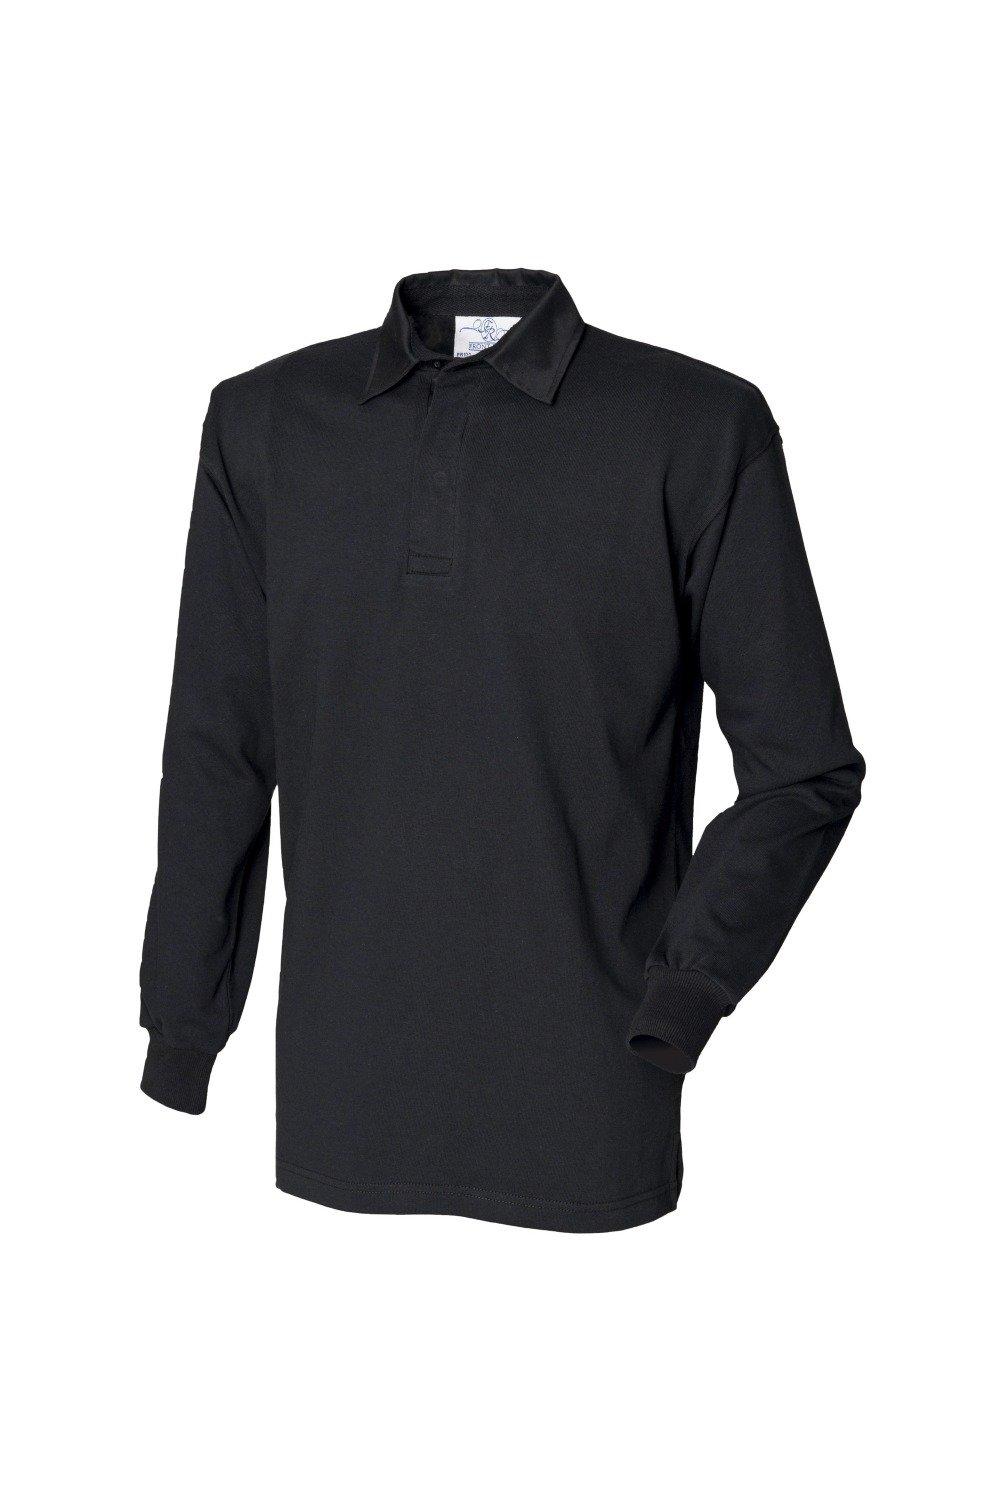 Классическая рубашка-поло для регби с длинным рукавом Front Row, черный